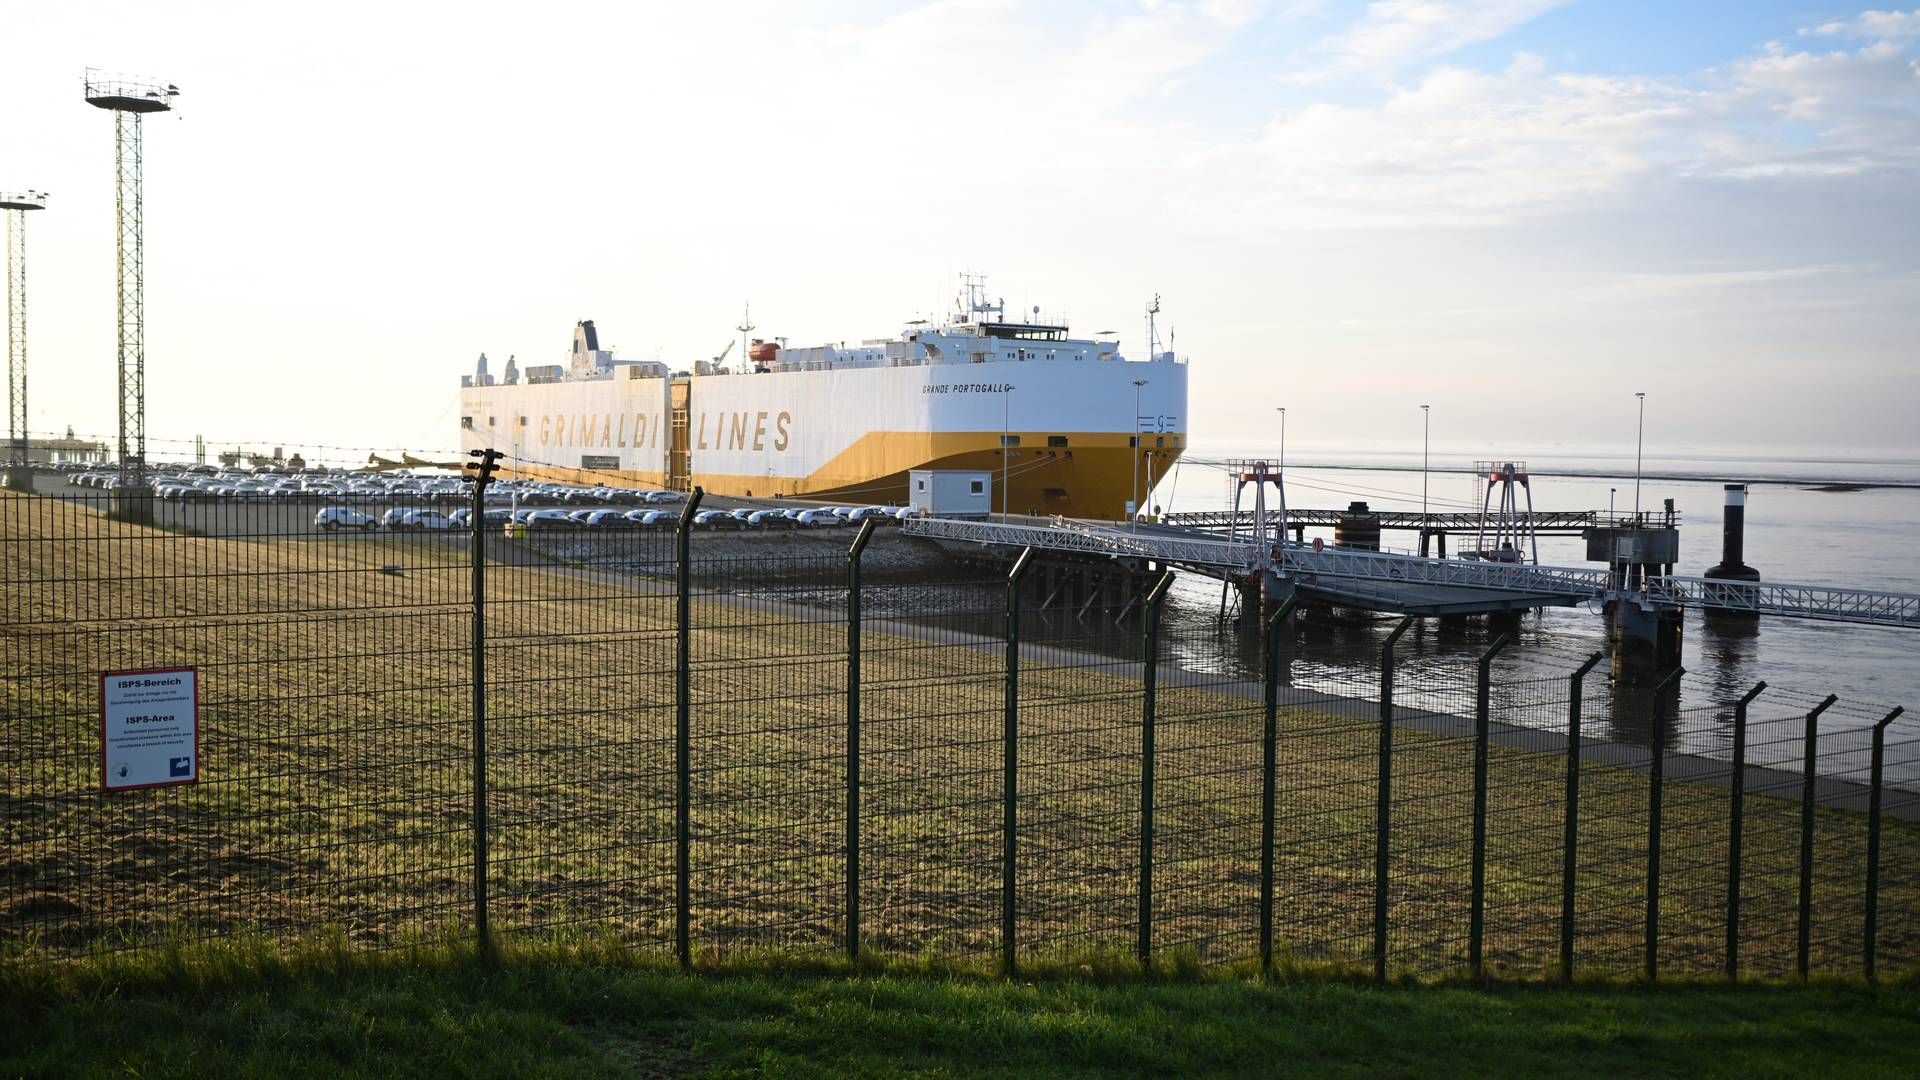 Bilskib i havnen i Emden, en af havnene i den tyske delstat Niedersachsen, som frygter, at besparelser vil bremse deres udvikling. | Foto: Lars Penning/AP/Ritzau Scanpix